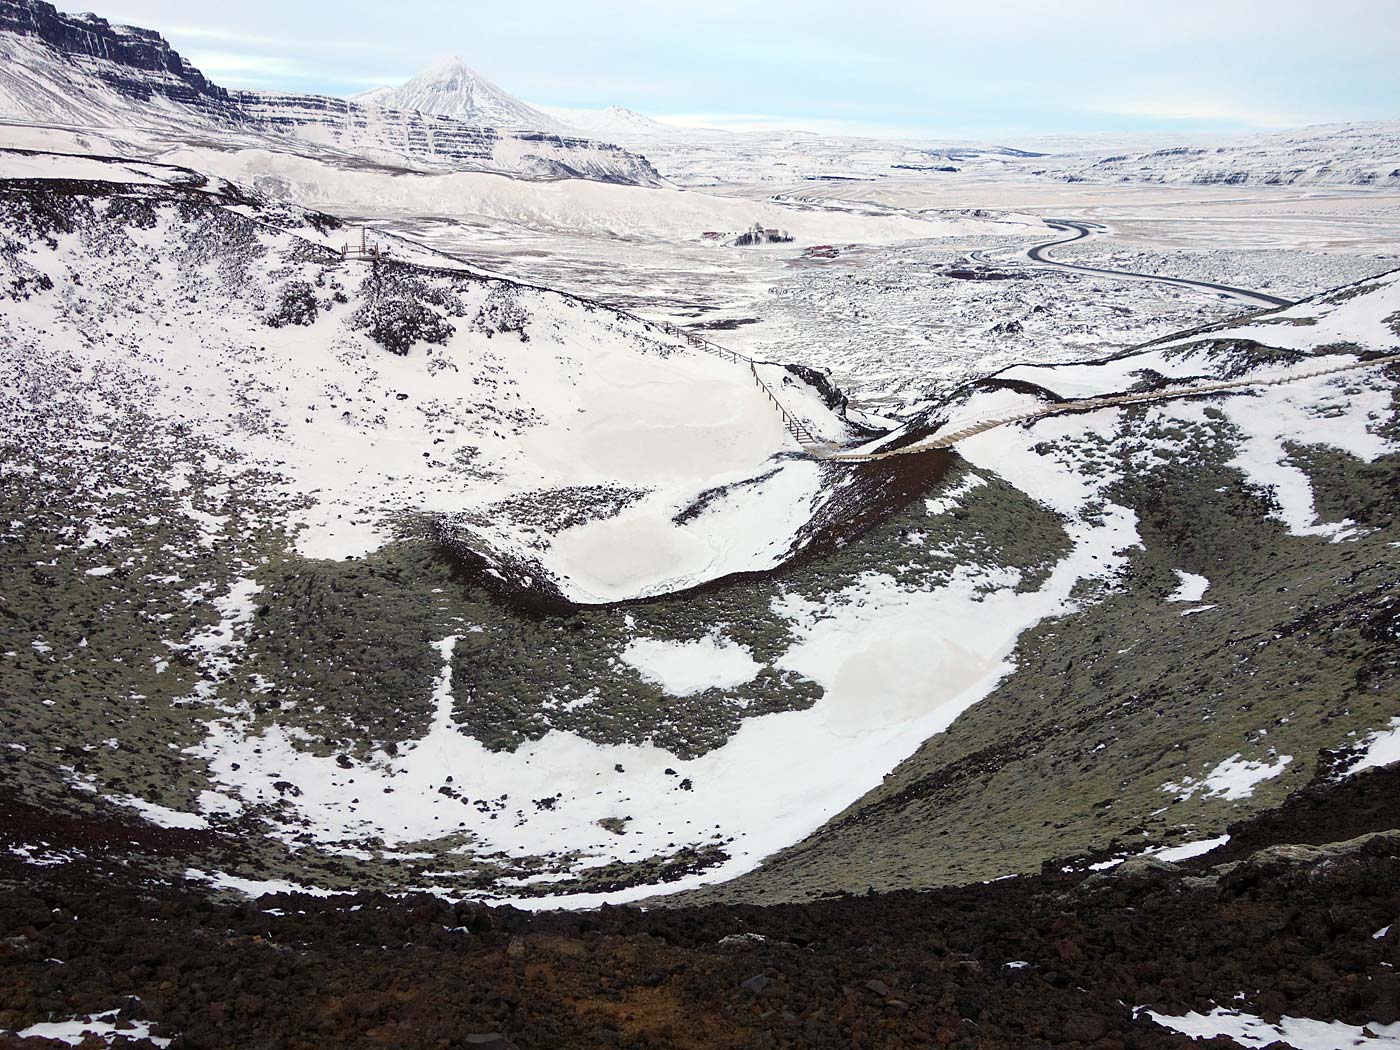 Grábrók. Short hike, near Bifröst. - IV. Easy to see: the crater. (31 December 2013)